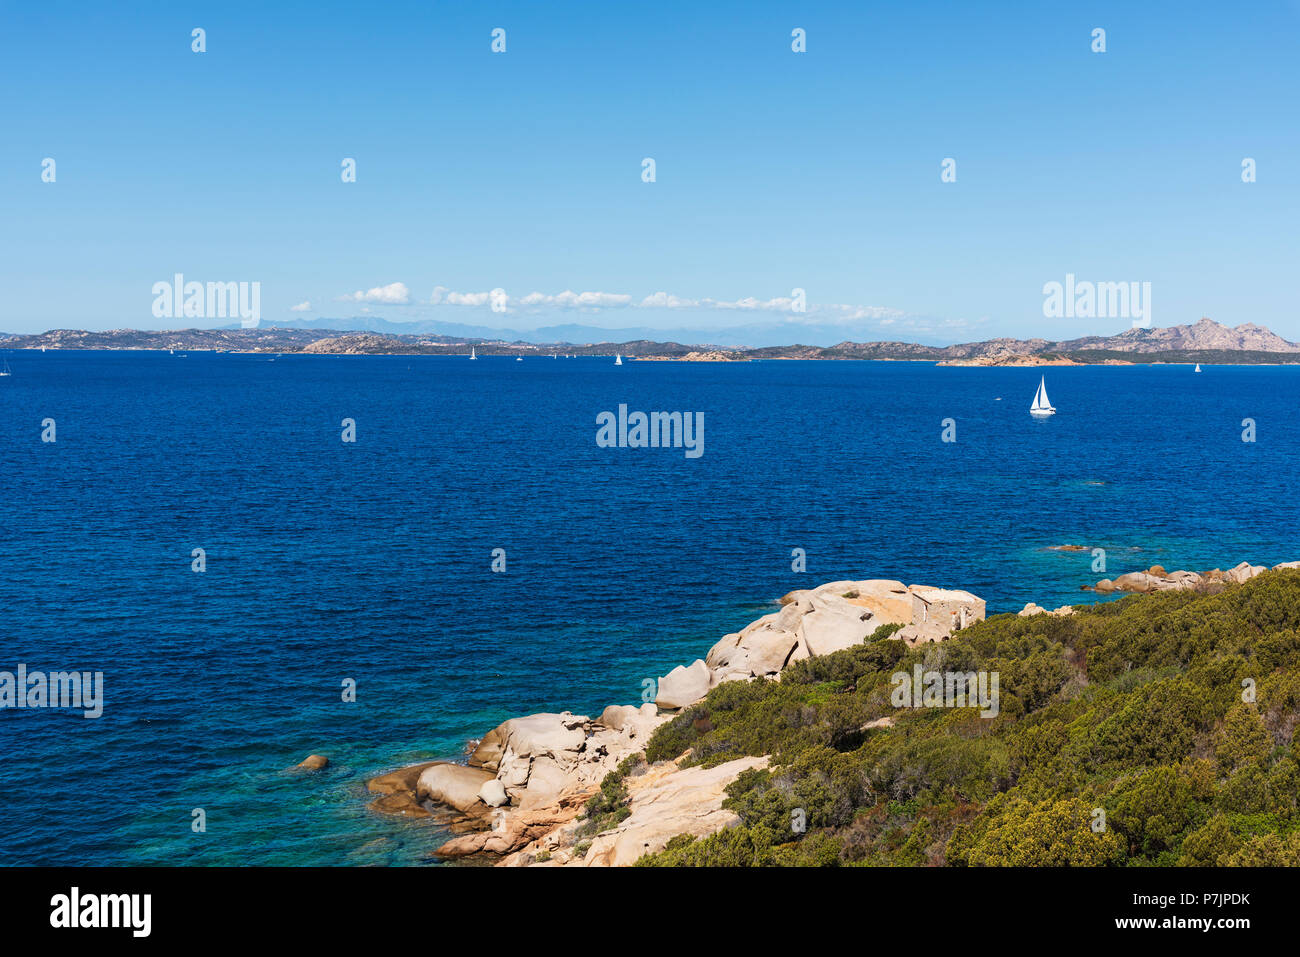 Una vista delle acque limpide del mare Mediterraneo e un gruppo di formazioni rocciose in una tranquilla spiaggia della costa di Baja Sardinia, nella famosa Costa Foto Stock